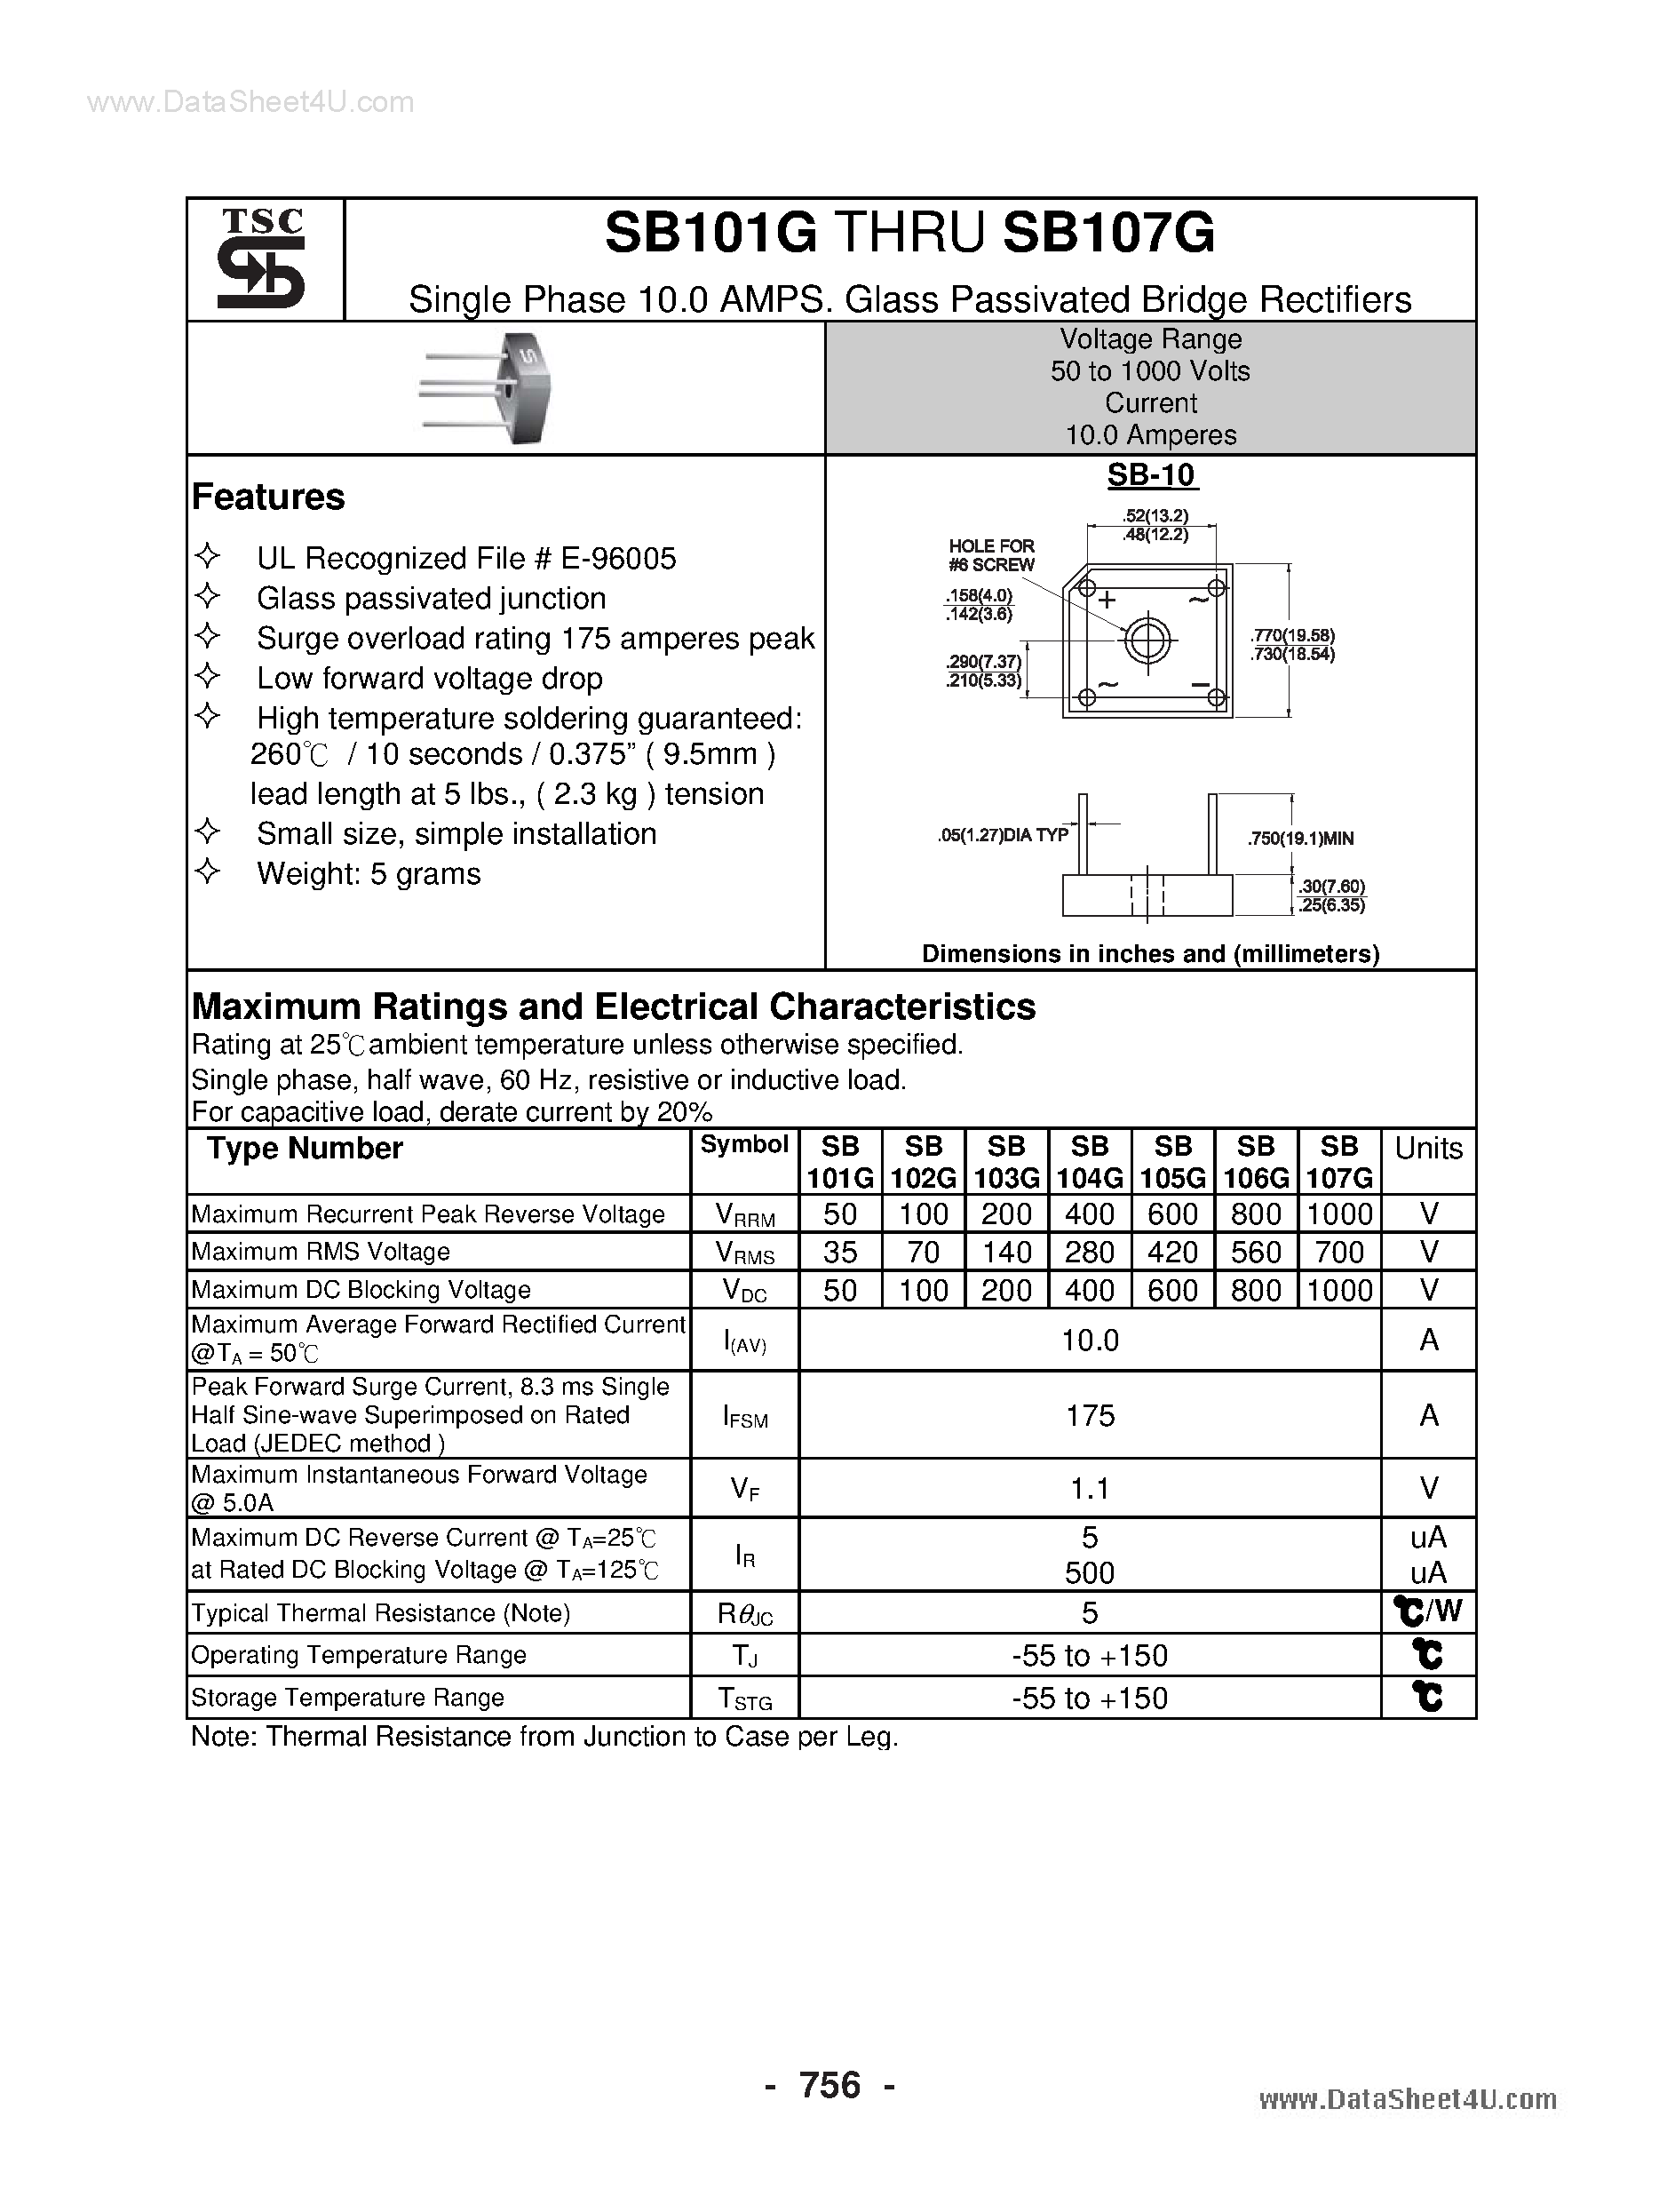 Даташит SB101G - (SB101G - SB107G) Glass Passivated Bridge Rectifiers страница 1